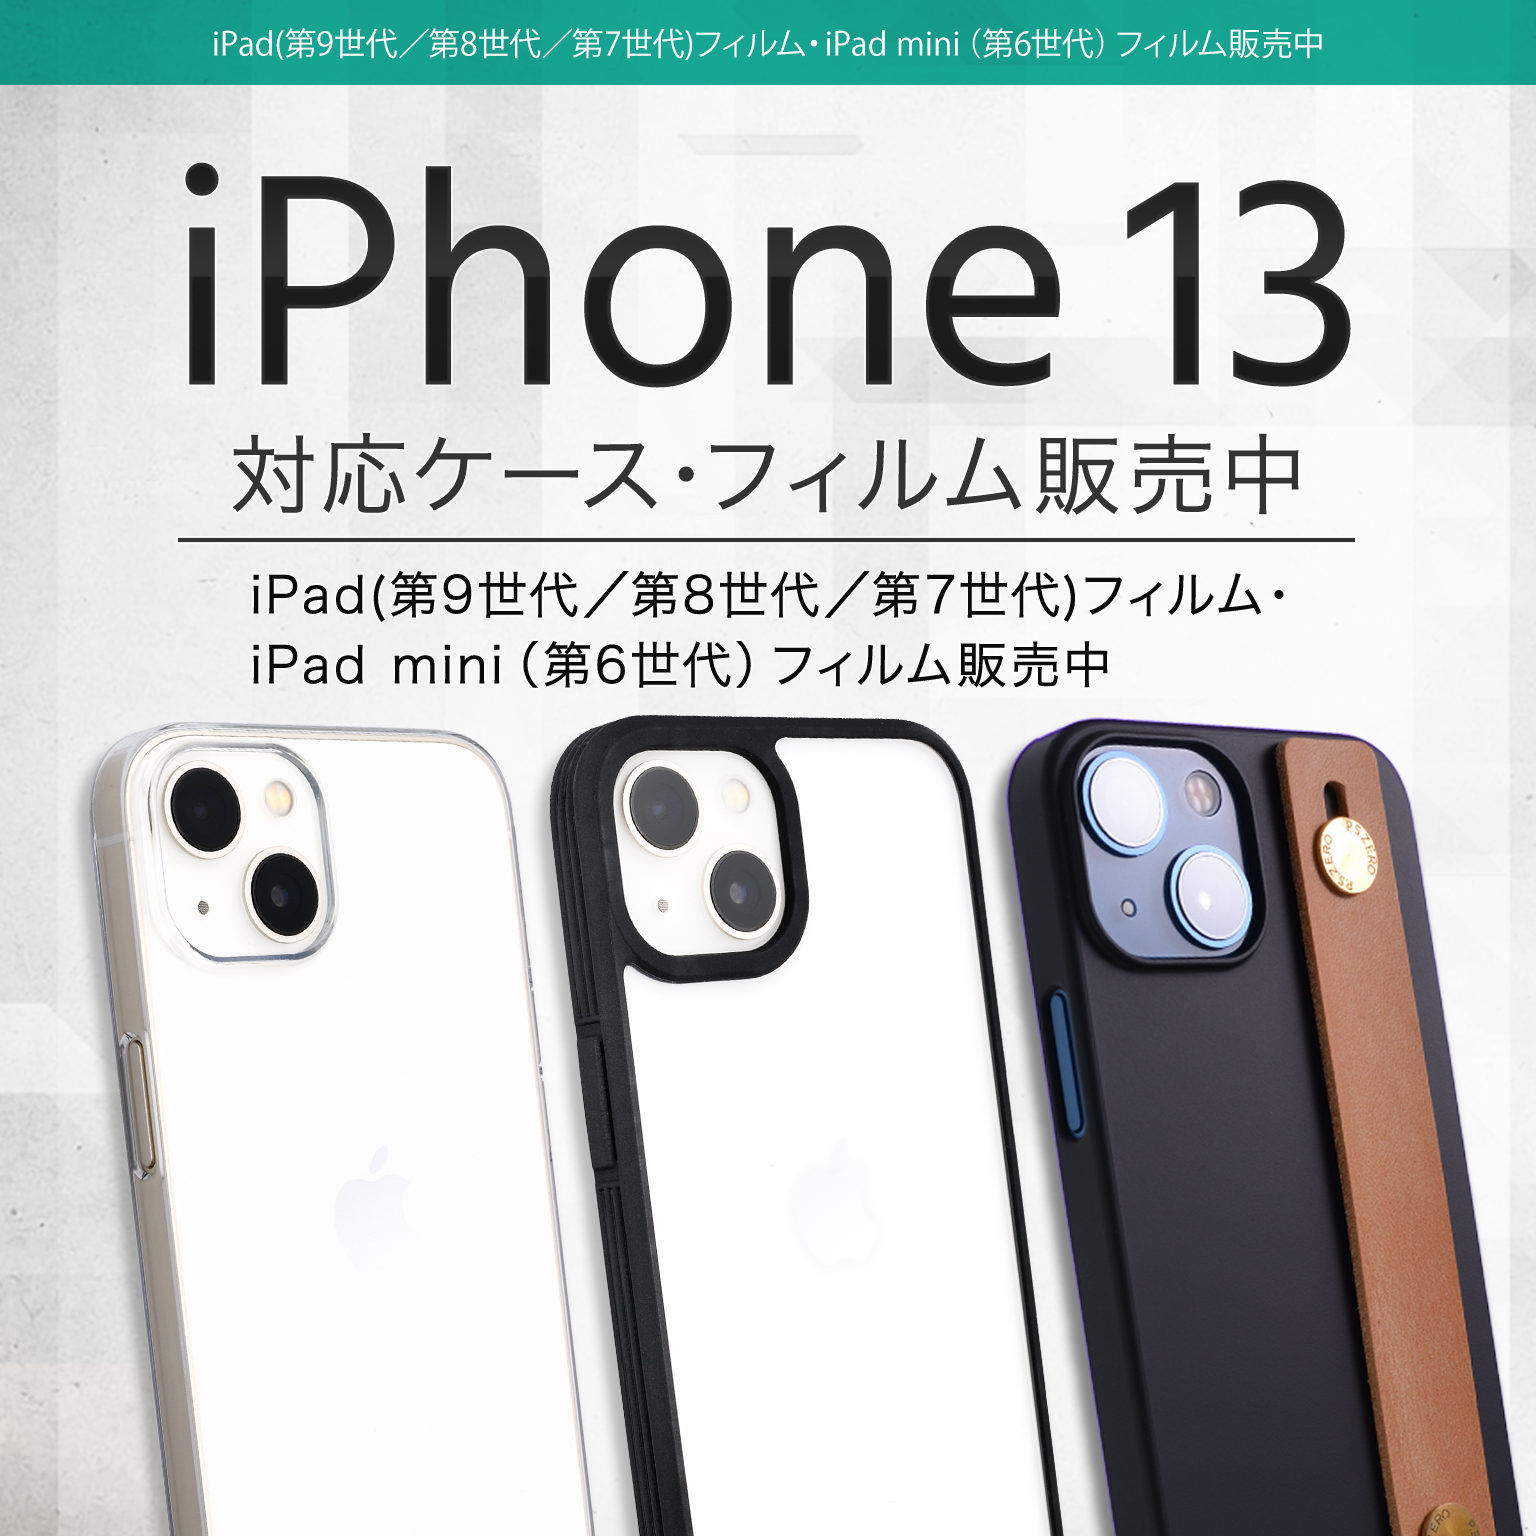 iPhone 13対応ケース・フィルム販売開始